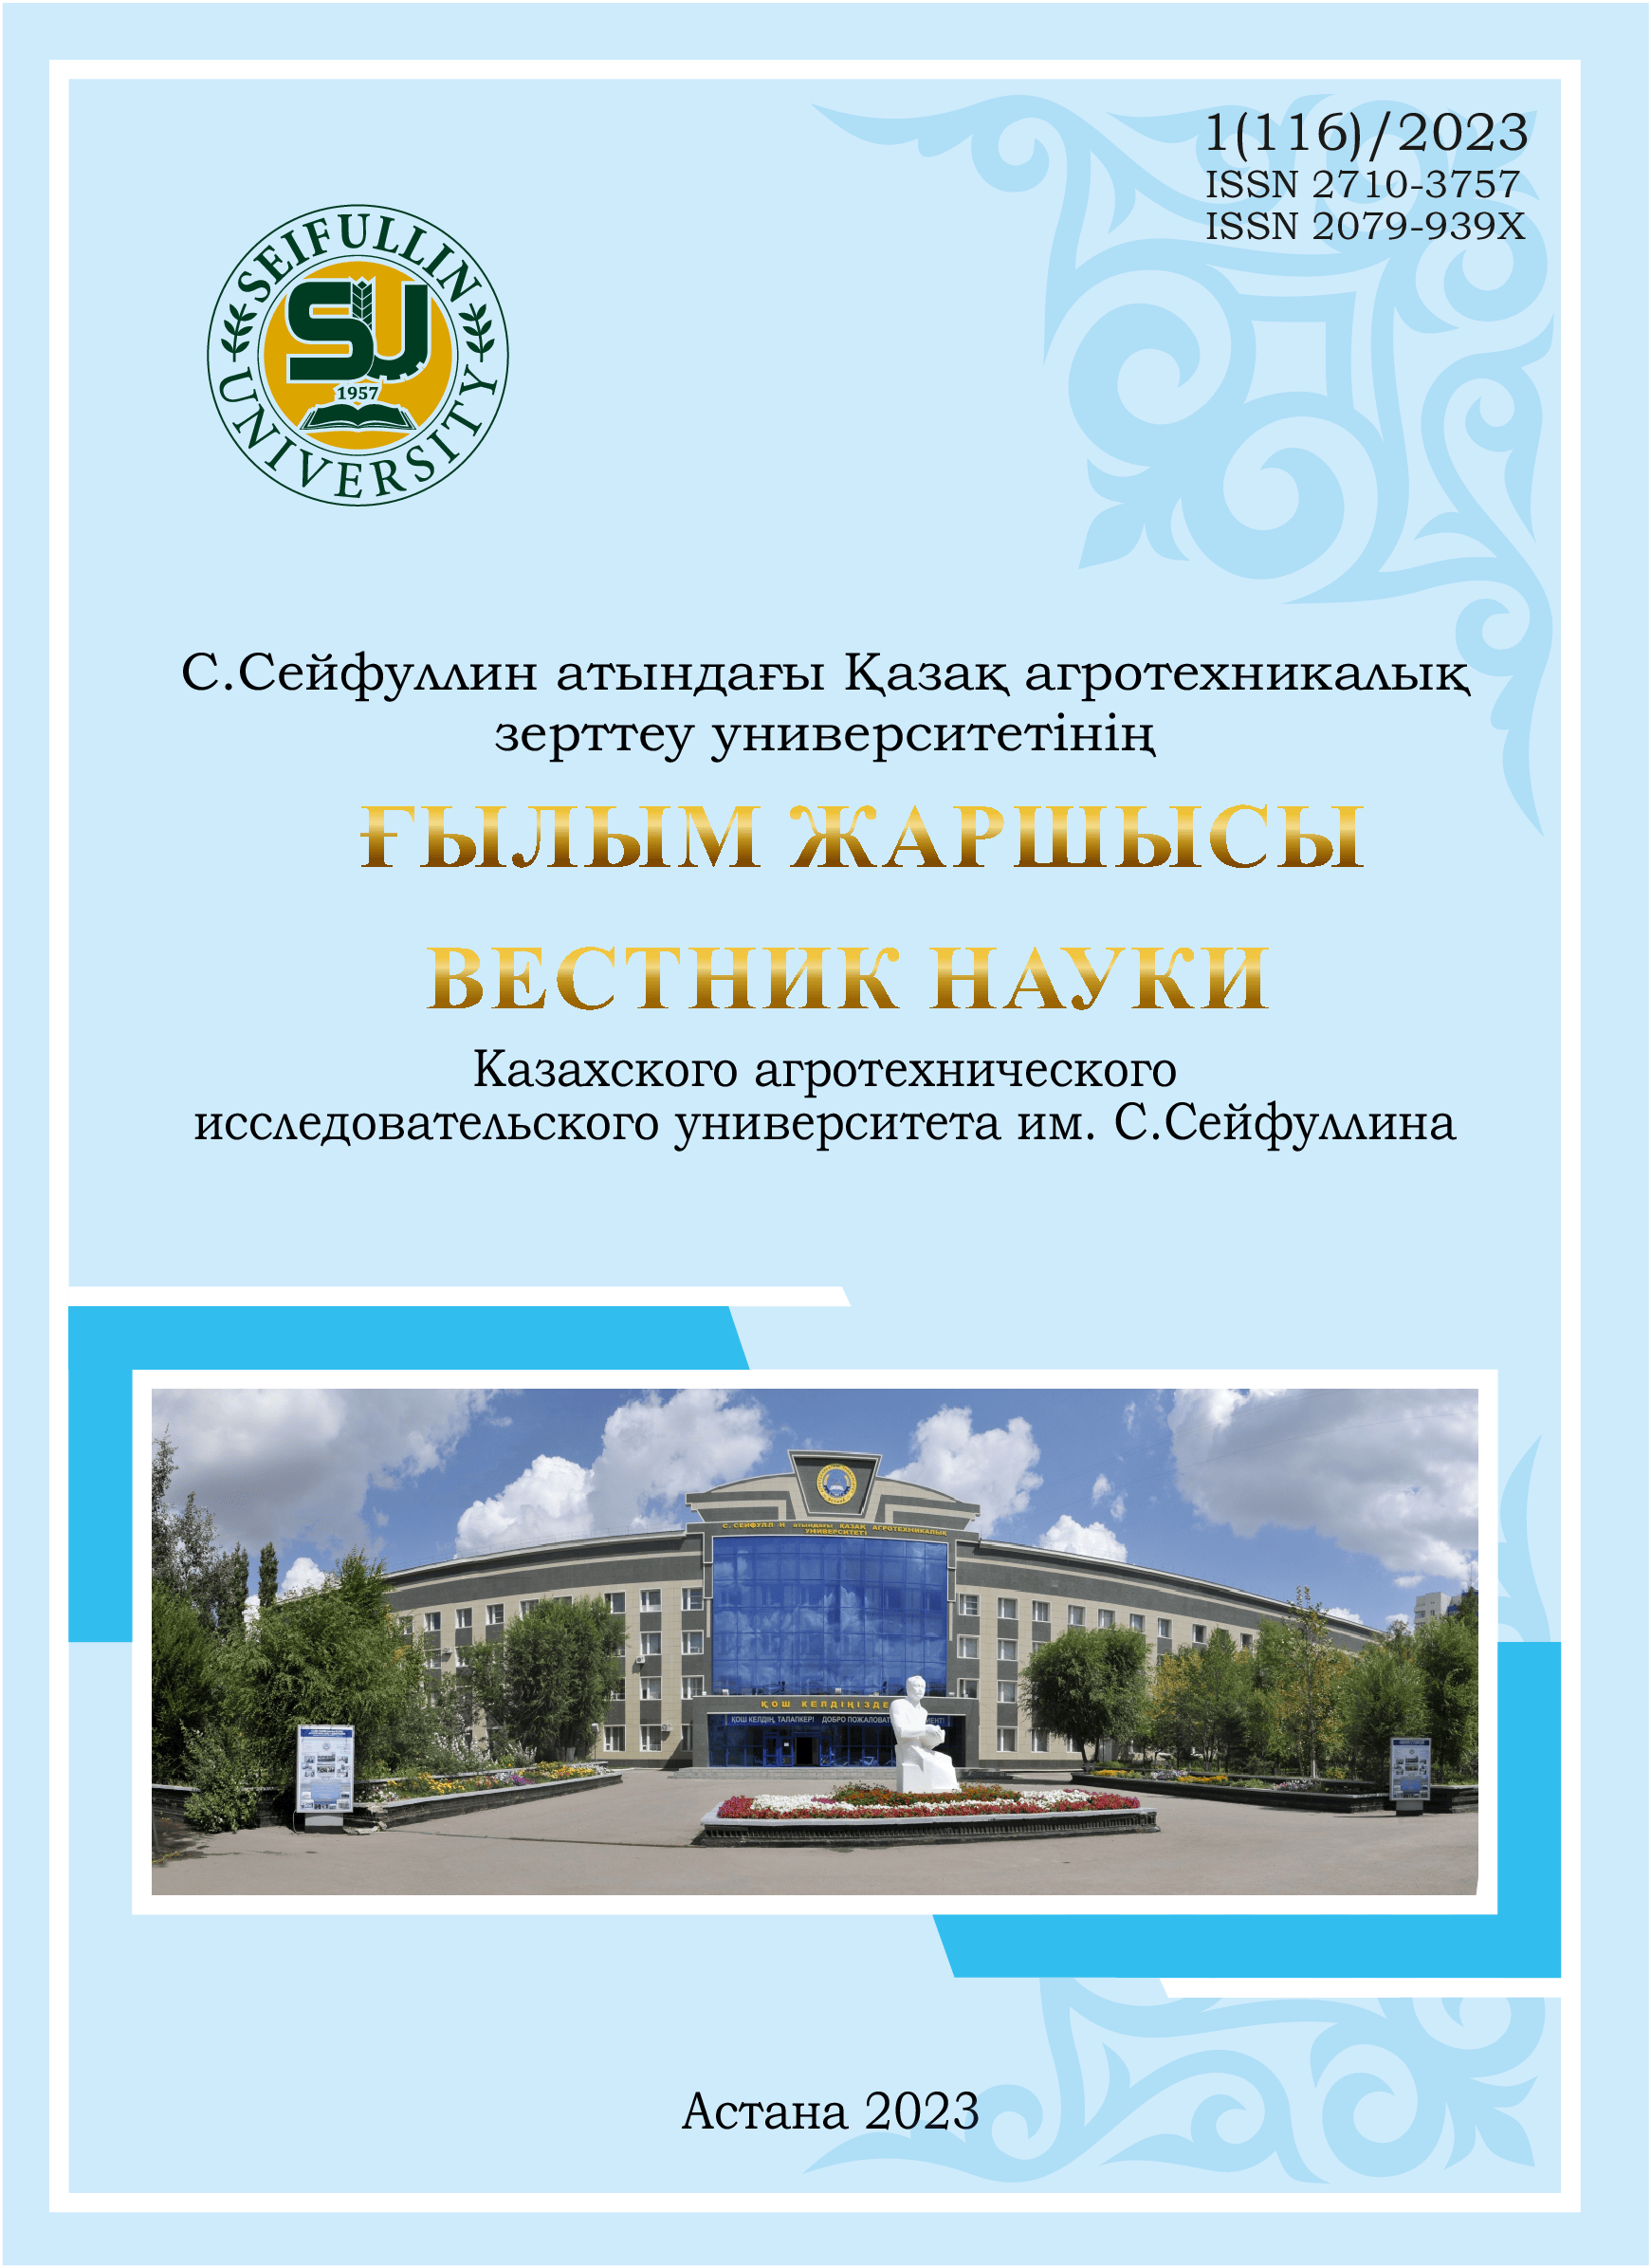 					Показать № 1(116) (2023): Вестник науки "Казахского агротехнического исследовательского университета им С. Сейфуллина"
				